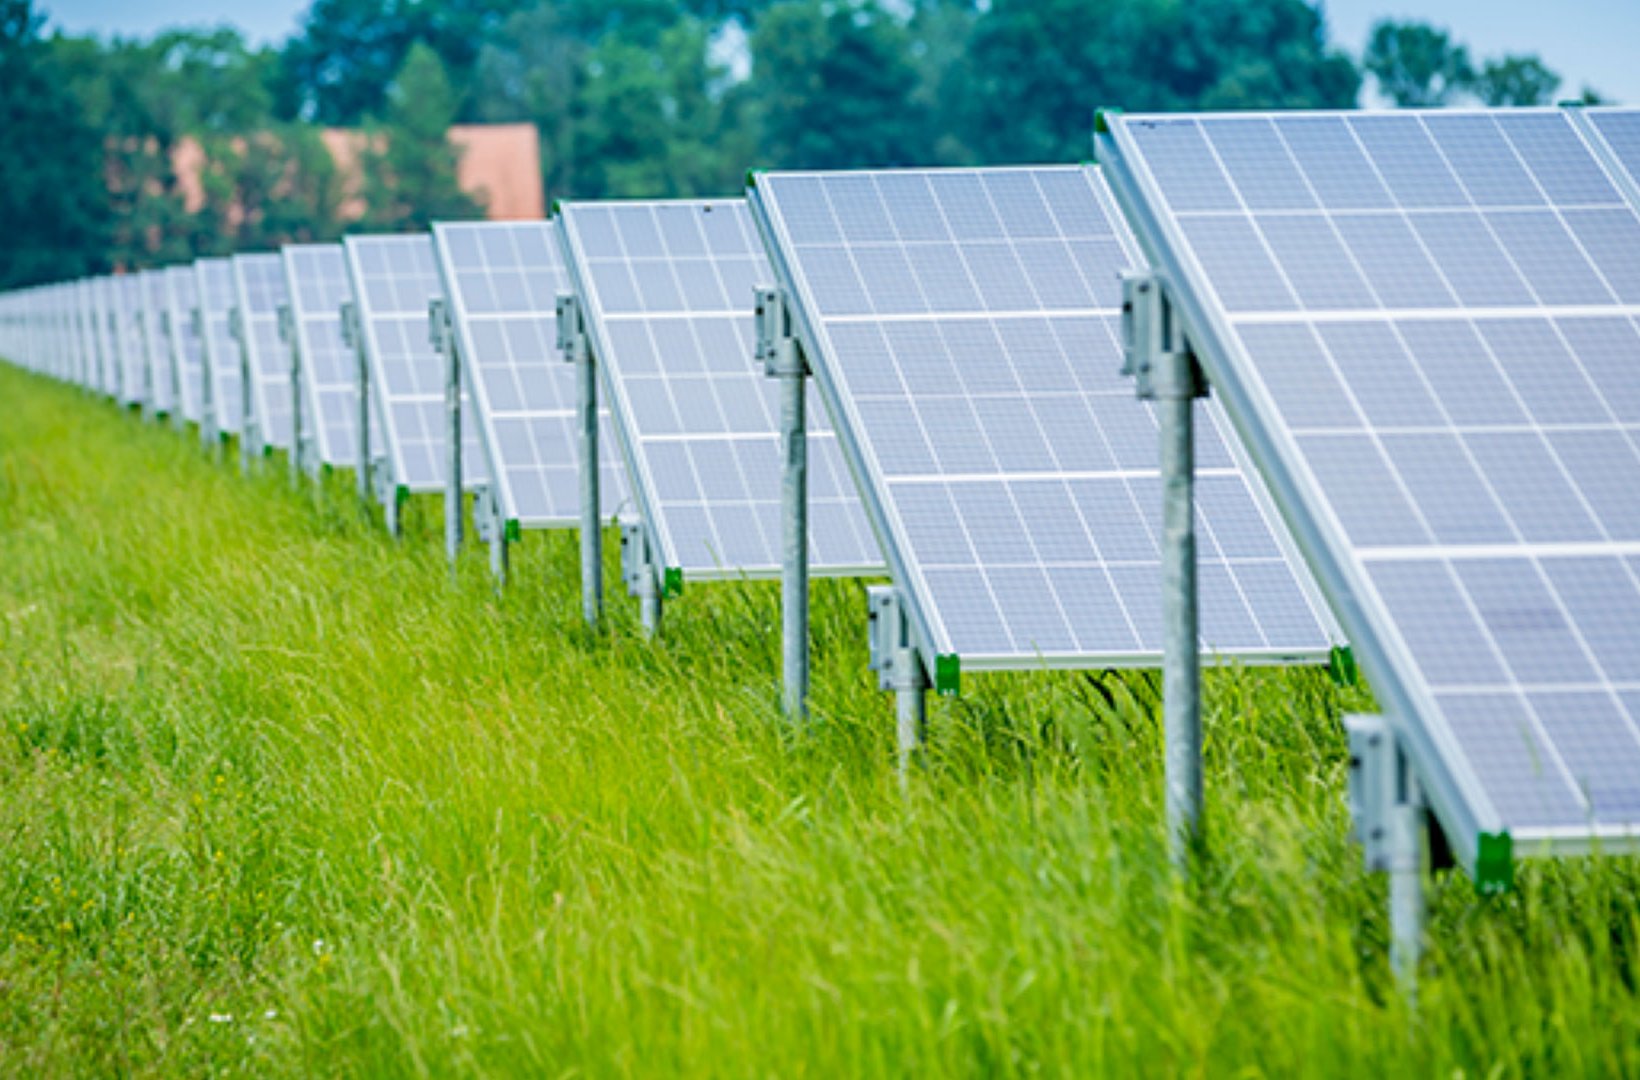 Solar panels in a green field